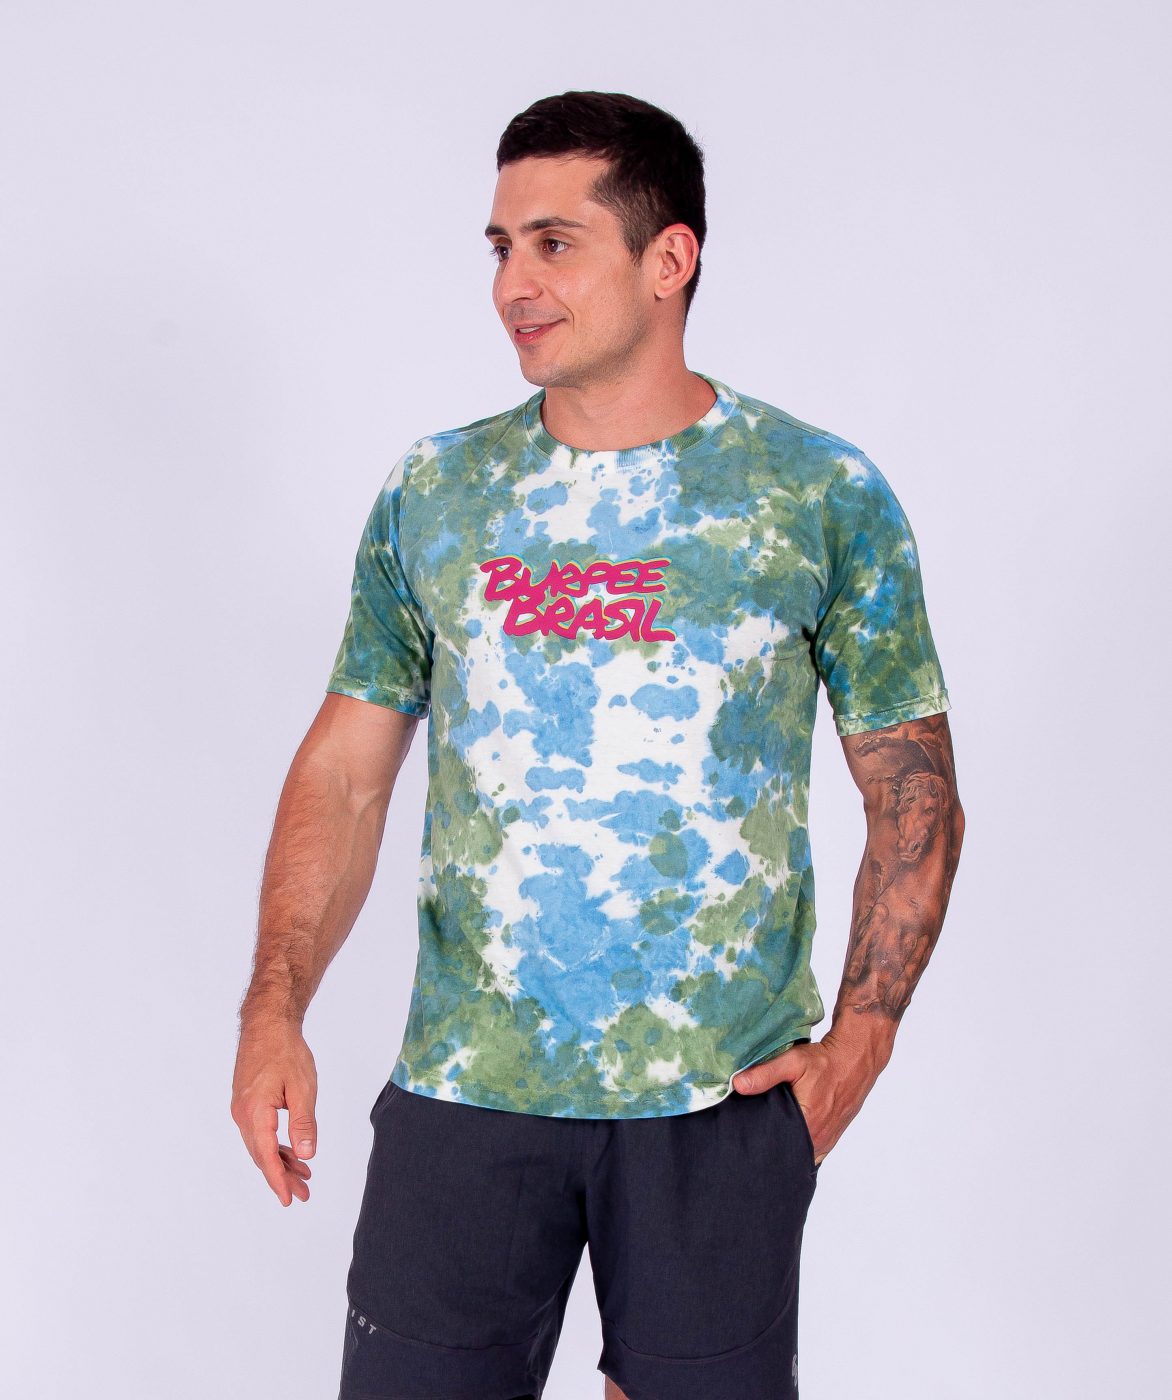 T-Shirt TieDye Blink – Burpee Brasil